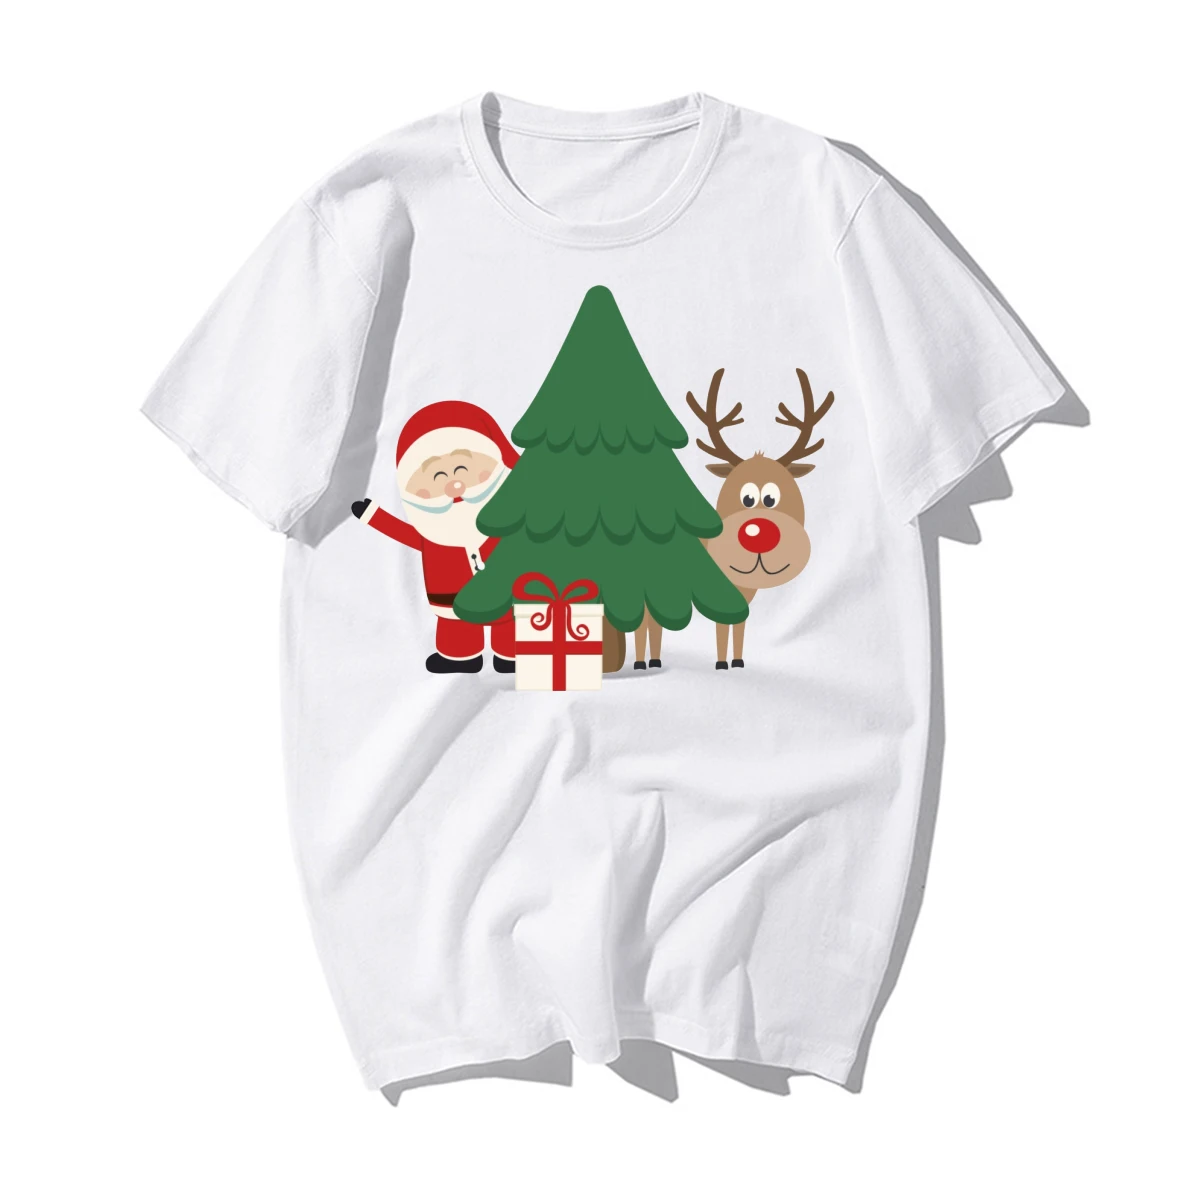 Забавные веселые футболки с рождественским узором, мужские Новые повседневные хлопковые футболки с оленями, Санта Клаусом, рождественской елкой, мужские рождественские подарки на год - Цвет: BZ238